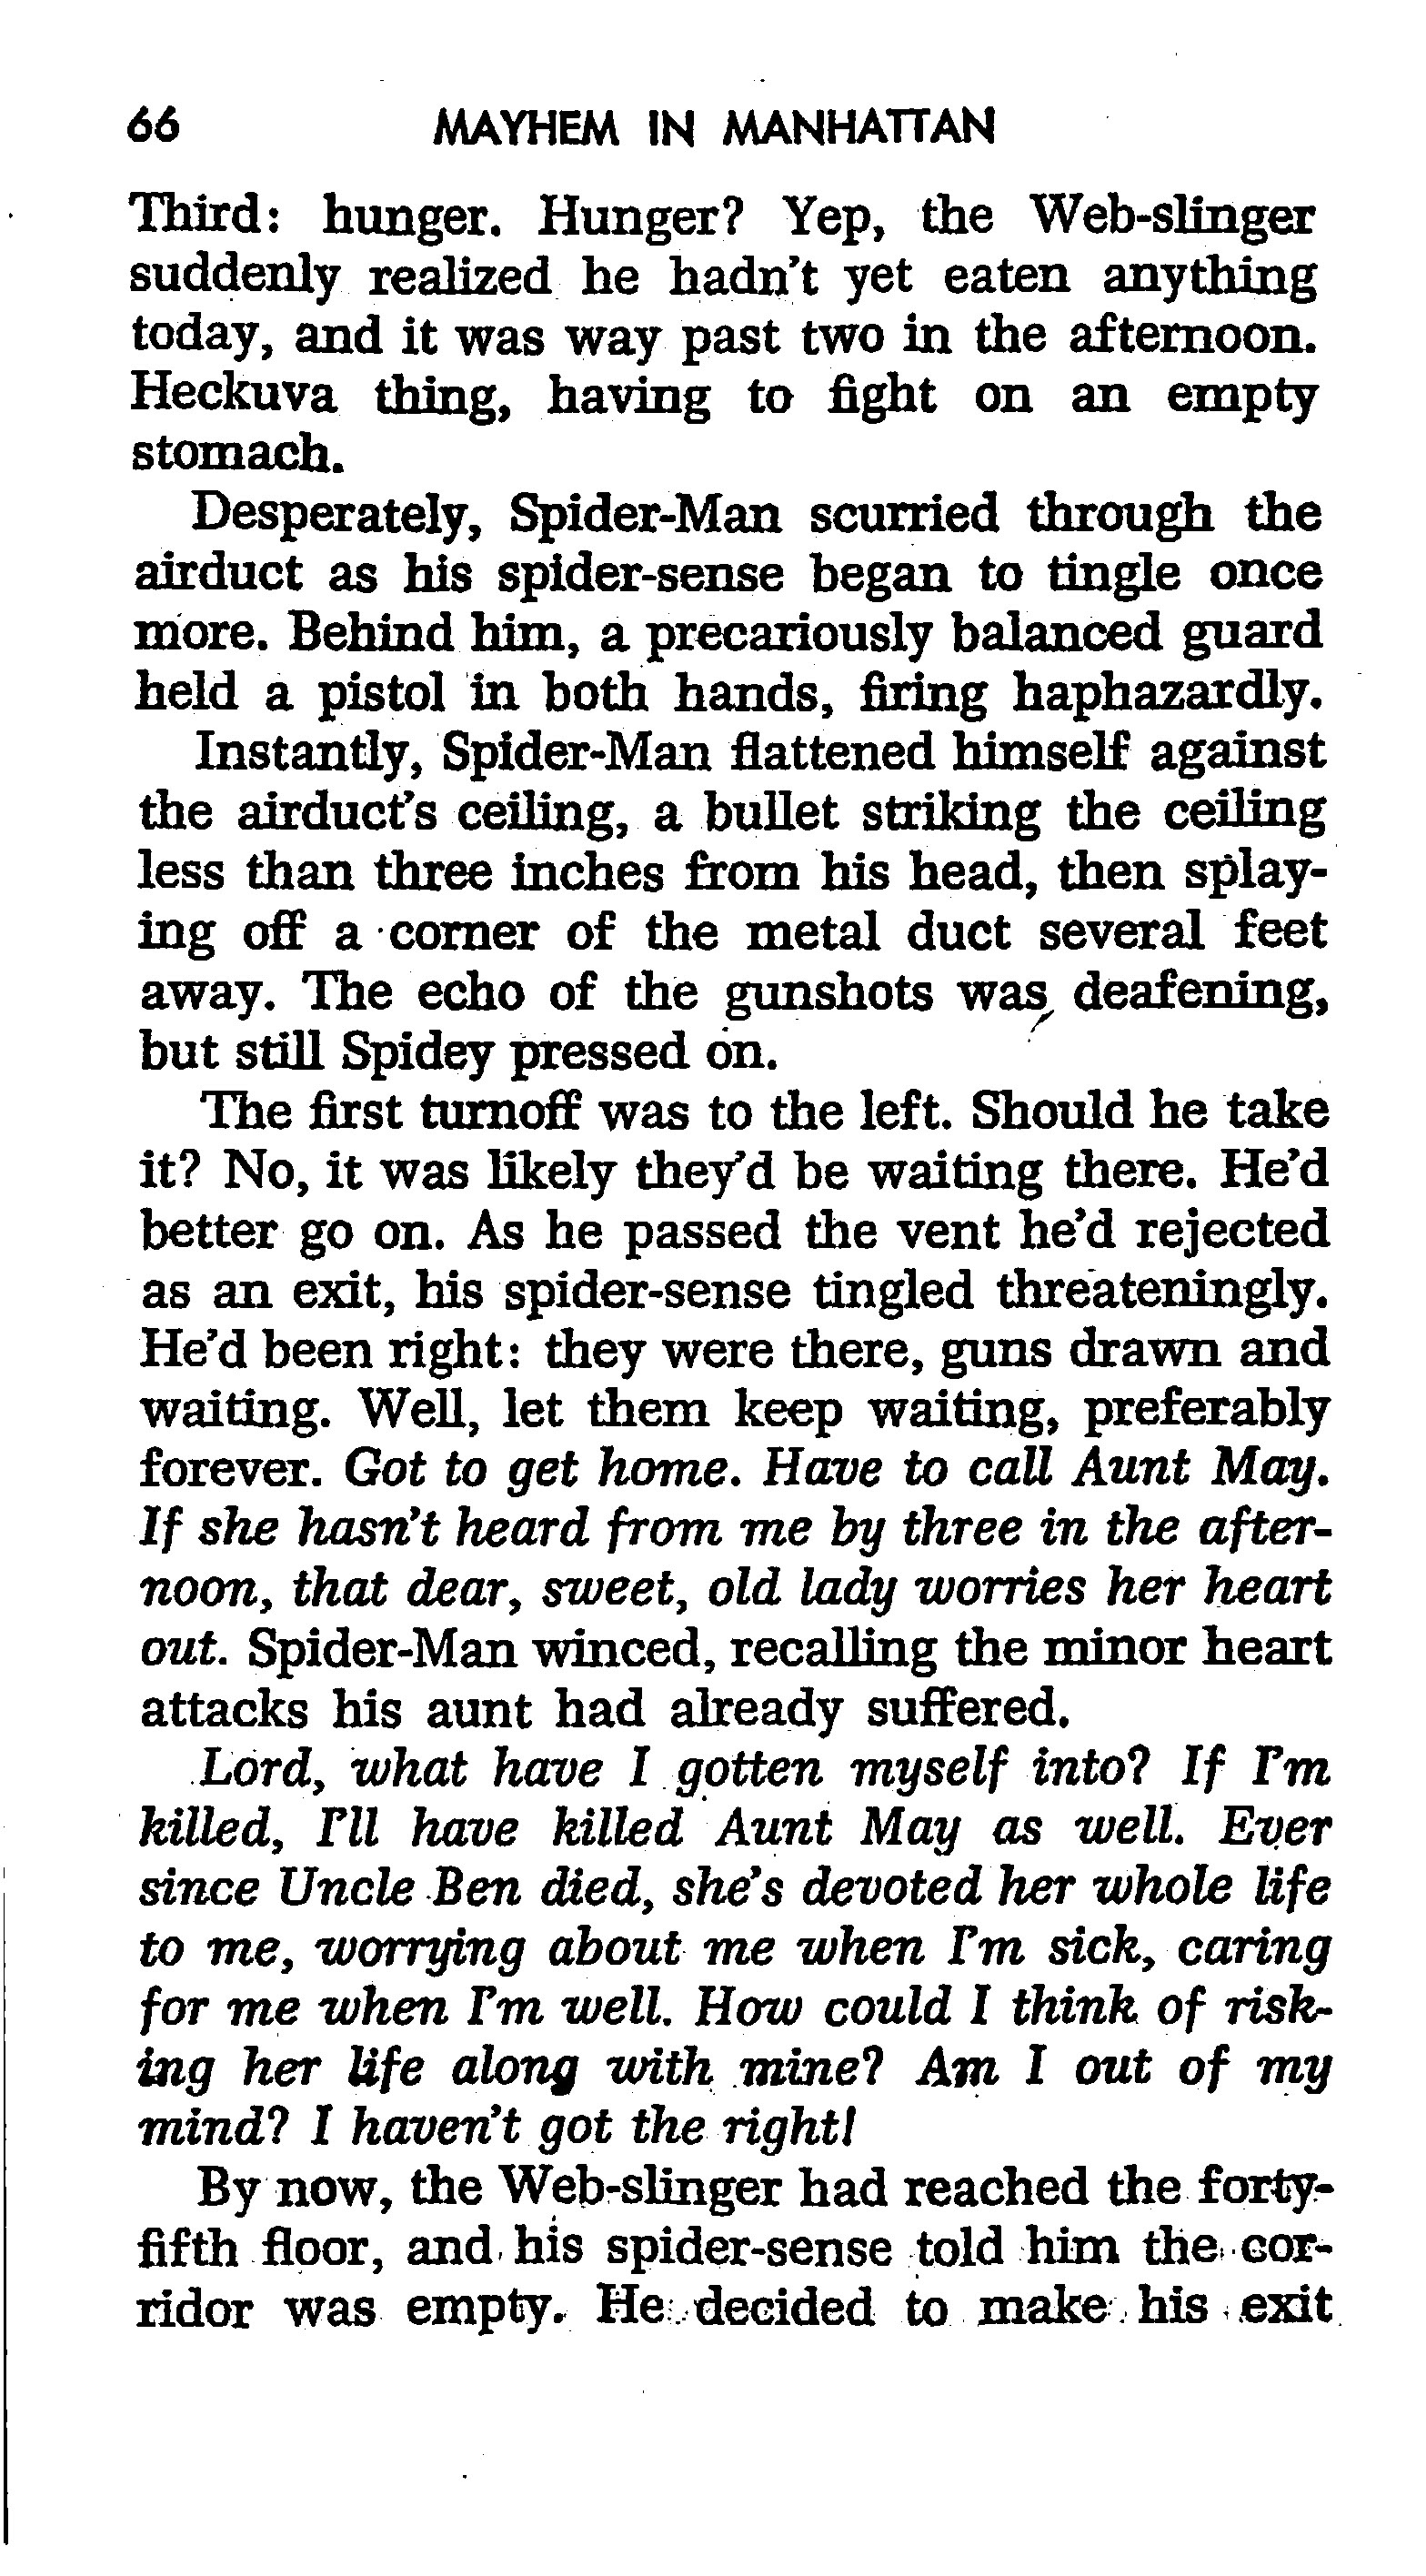 Read online The Amazing Spider-Man: Mayhem in Manhattan comic -  Issue # TPB (Part 1) - 67